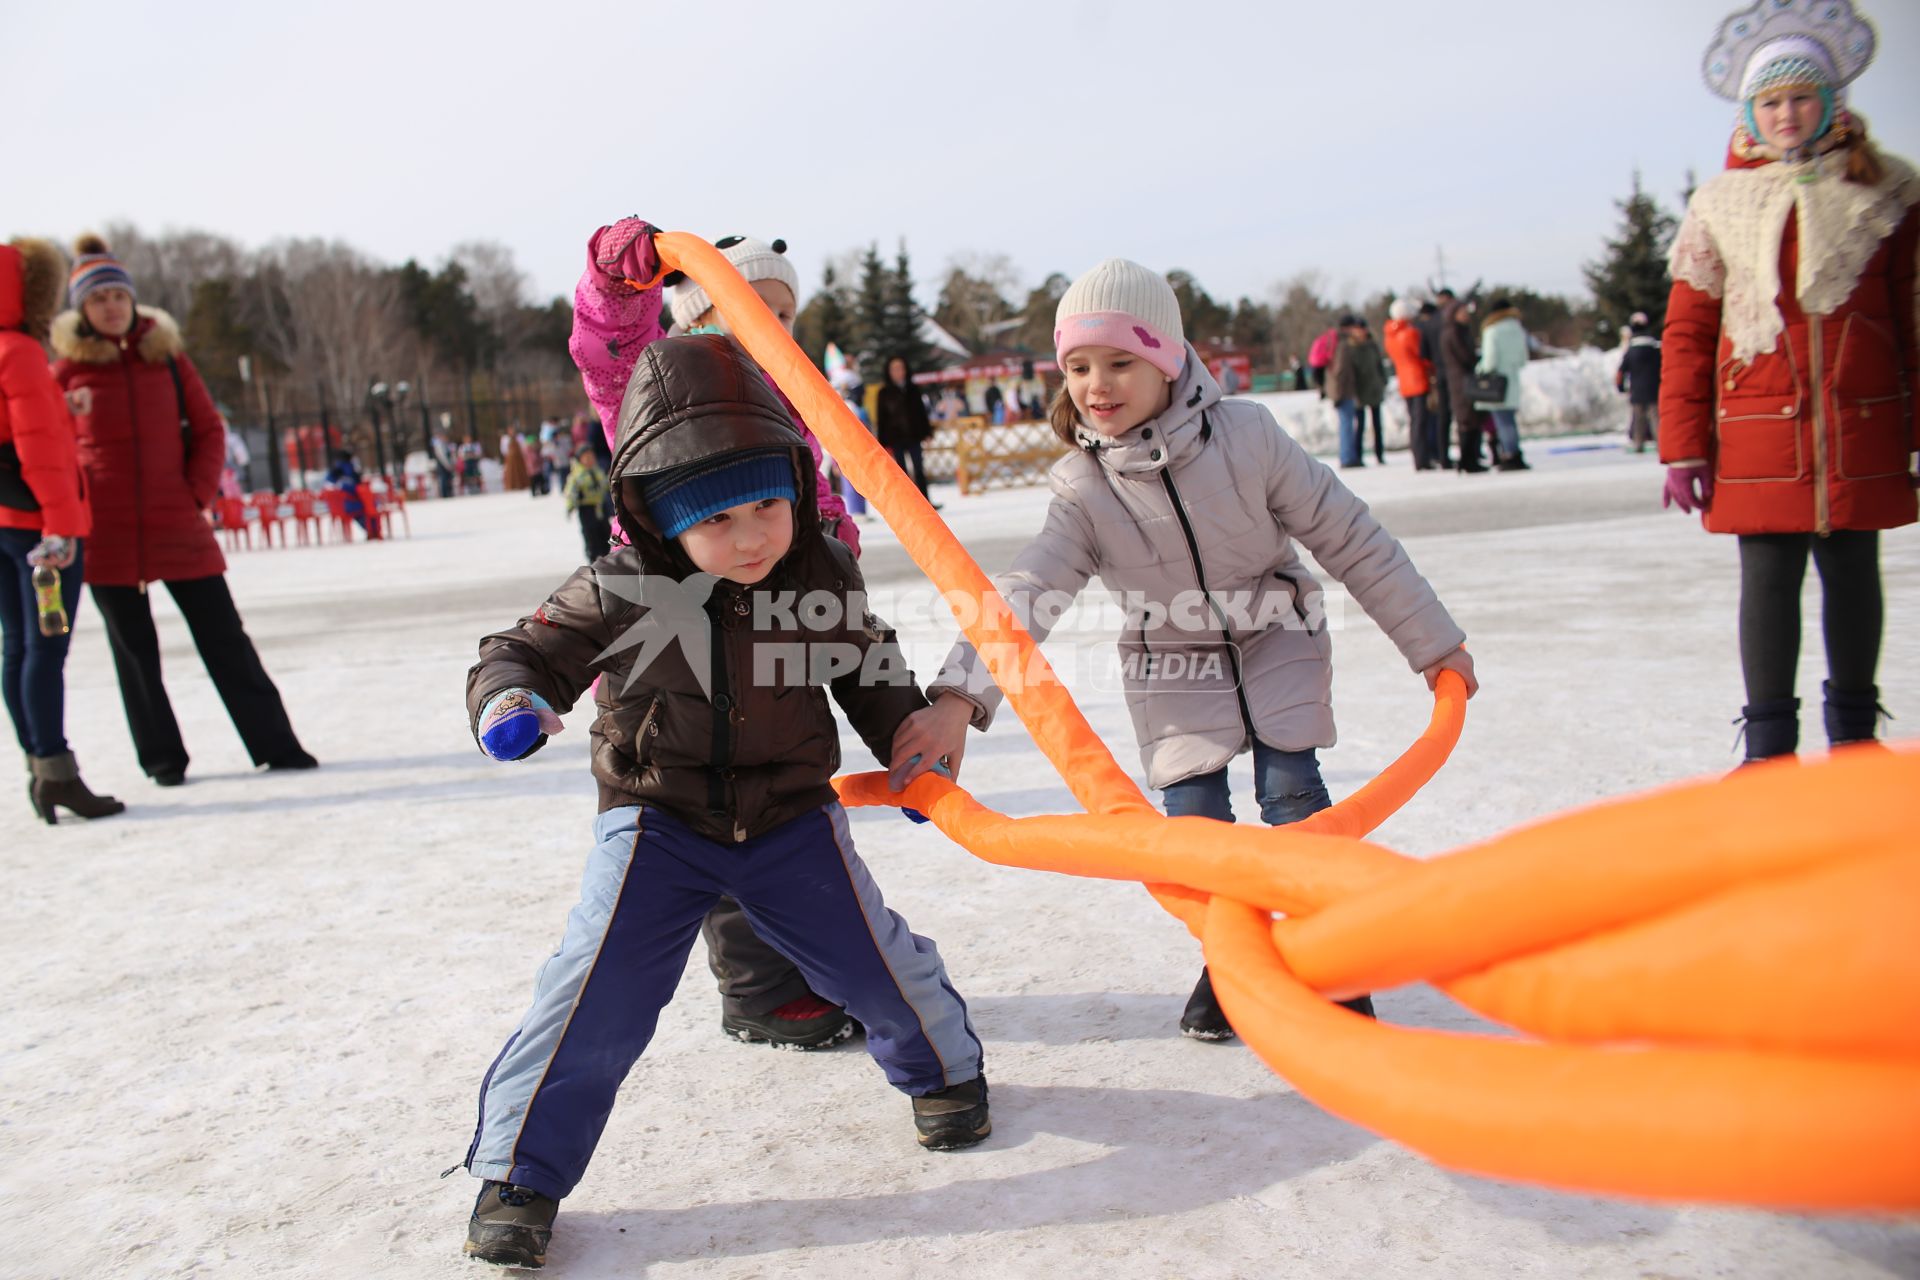 Челябинск. Игры с детьми и народные забавы  во время празднования Широкой Масленицы.